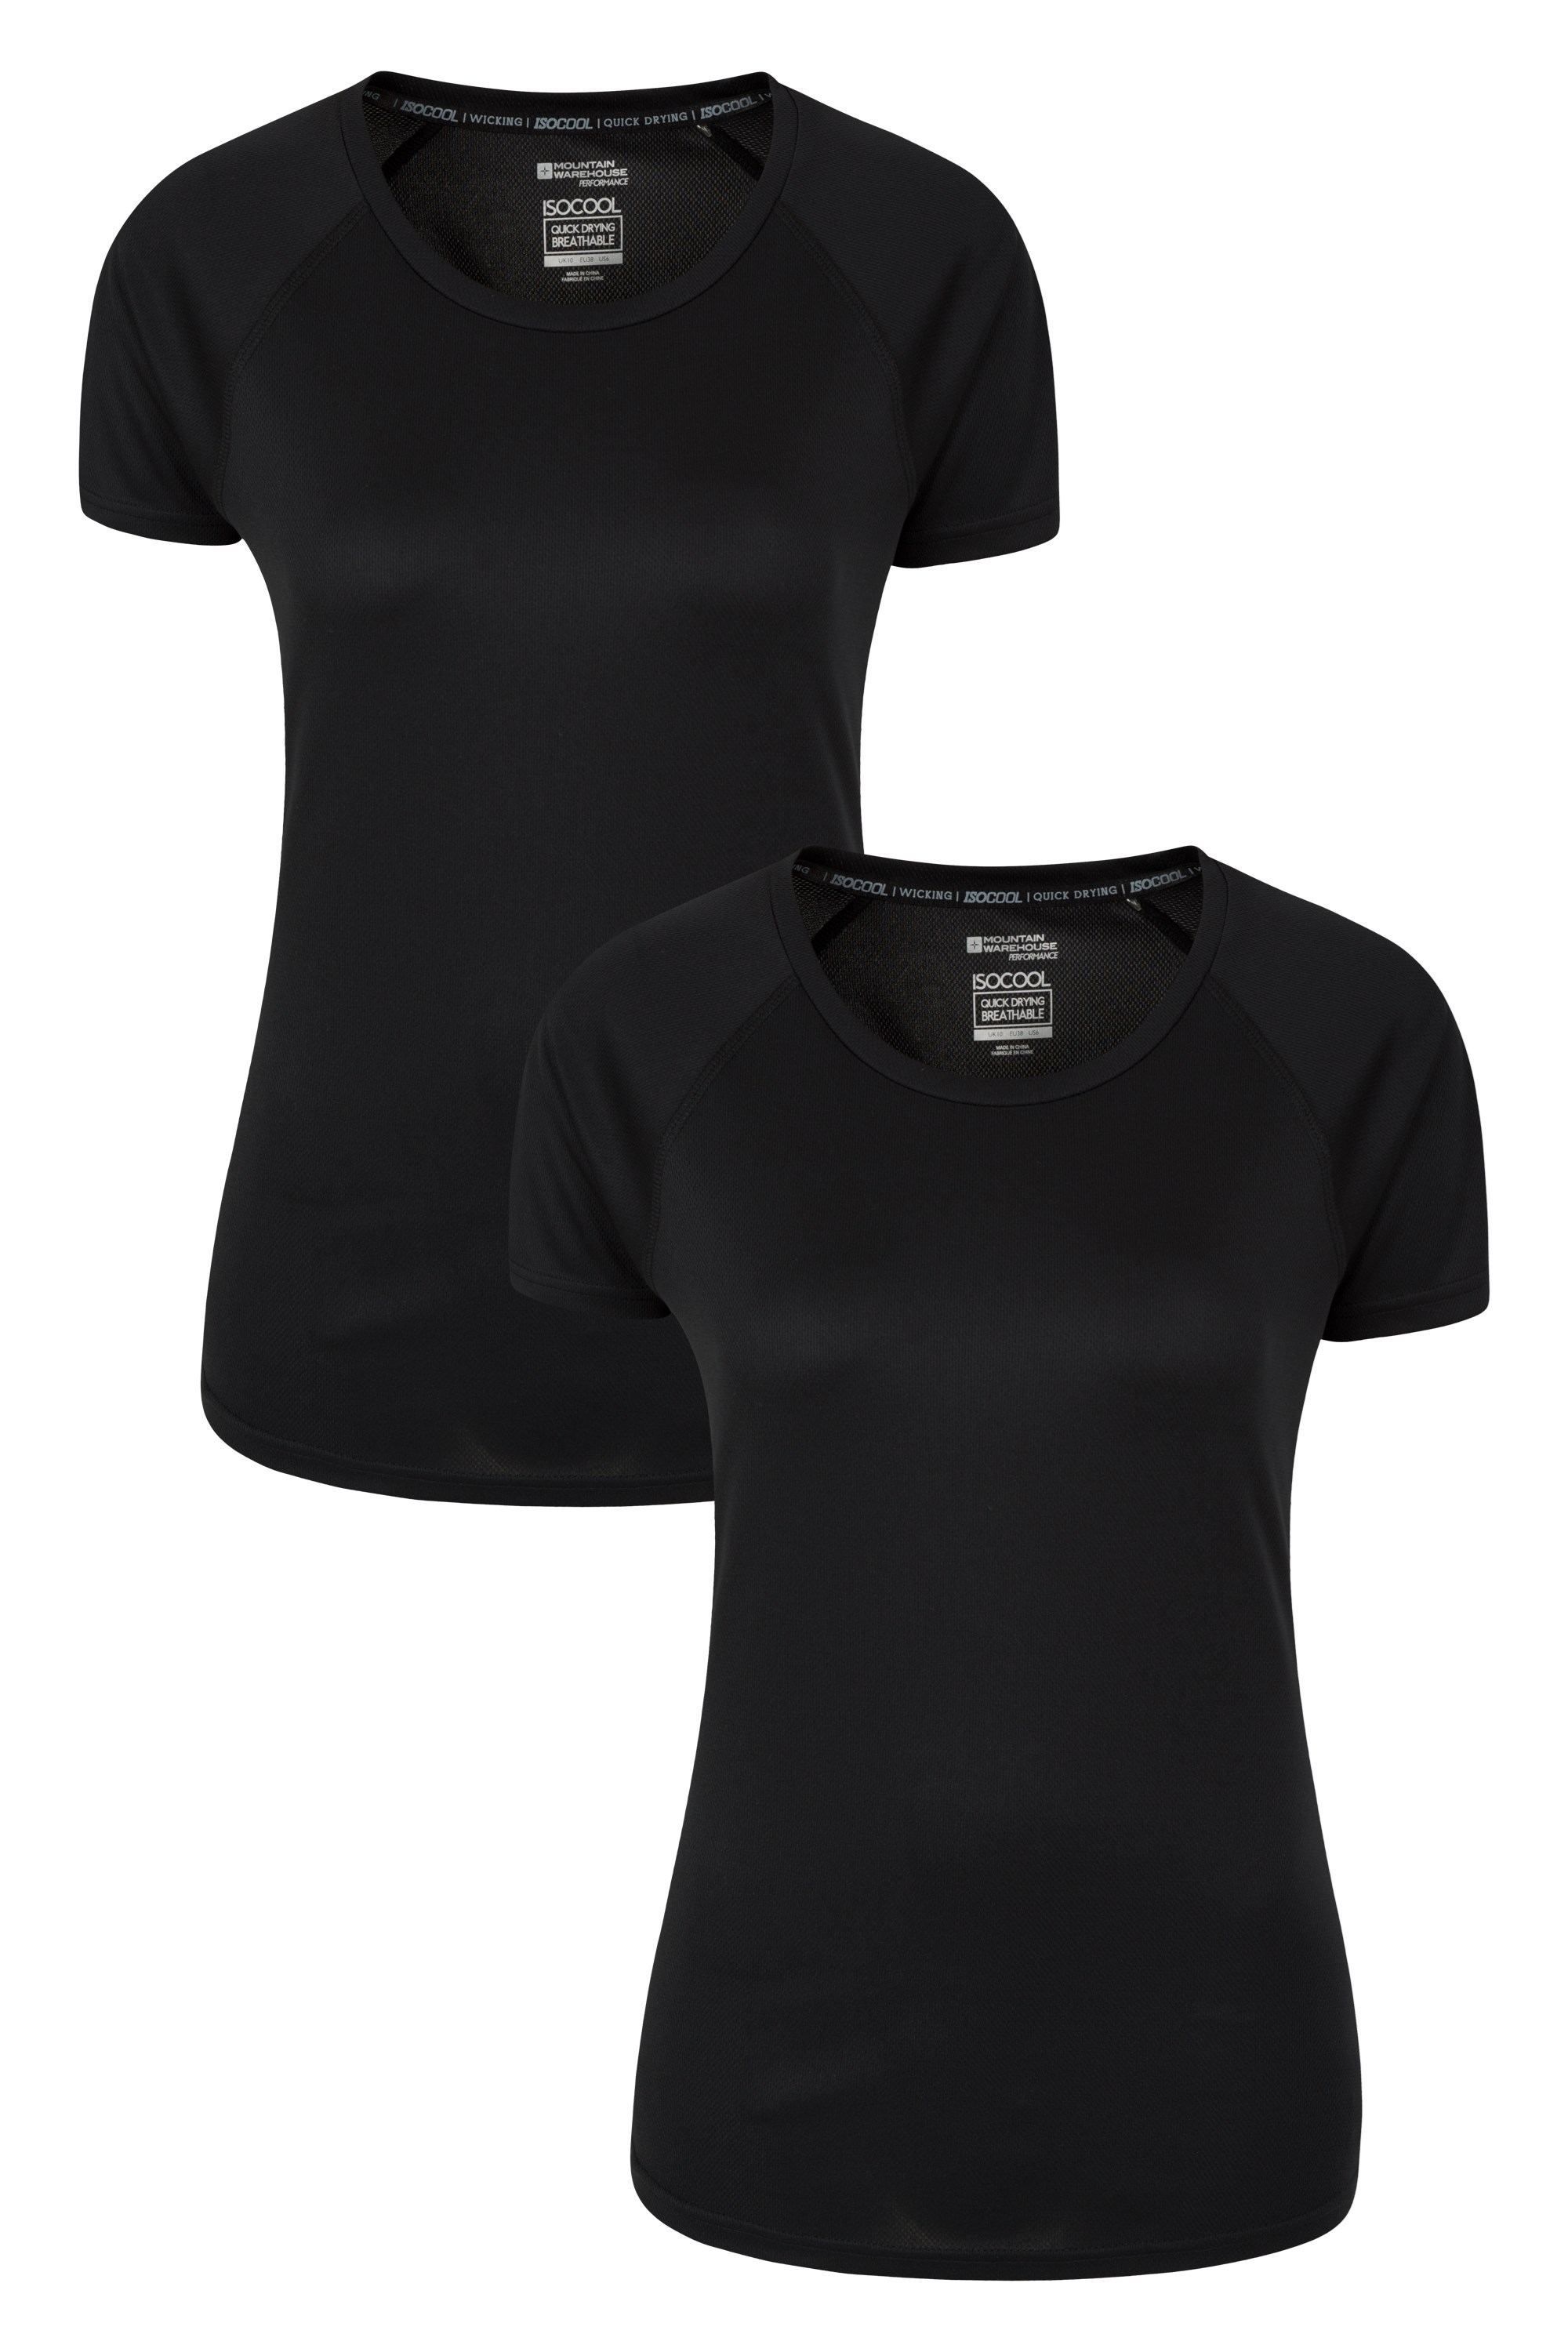 T-Shirt UV Endurance Femme - Multipack - Noir